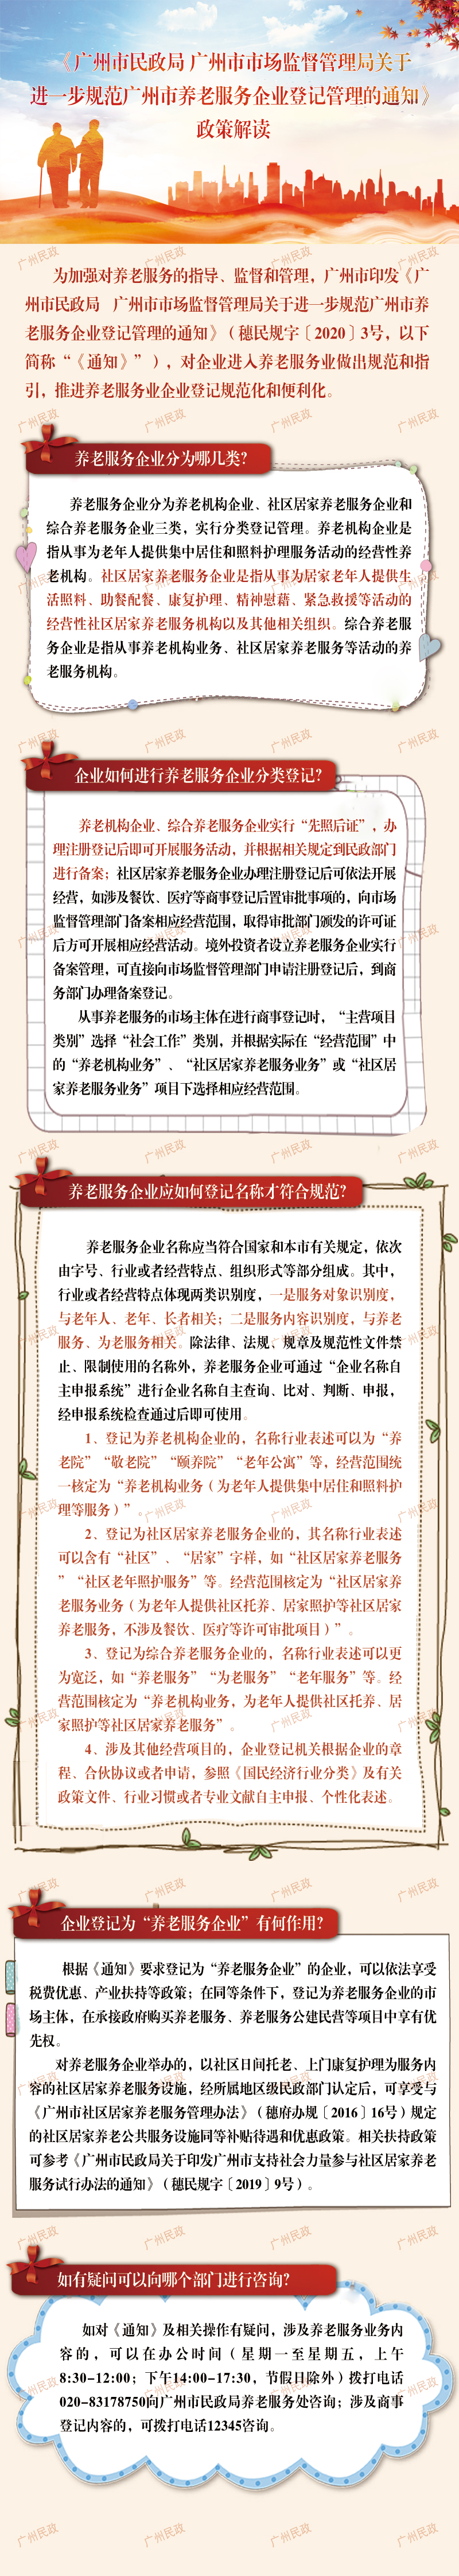 广州市民政局 广州市市场监督管理局关于进一步规范广州市养老服务企业登记管理的通知.jpg